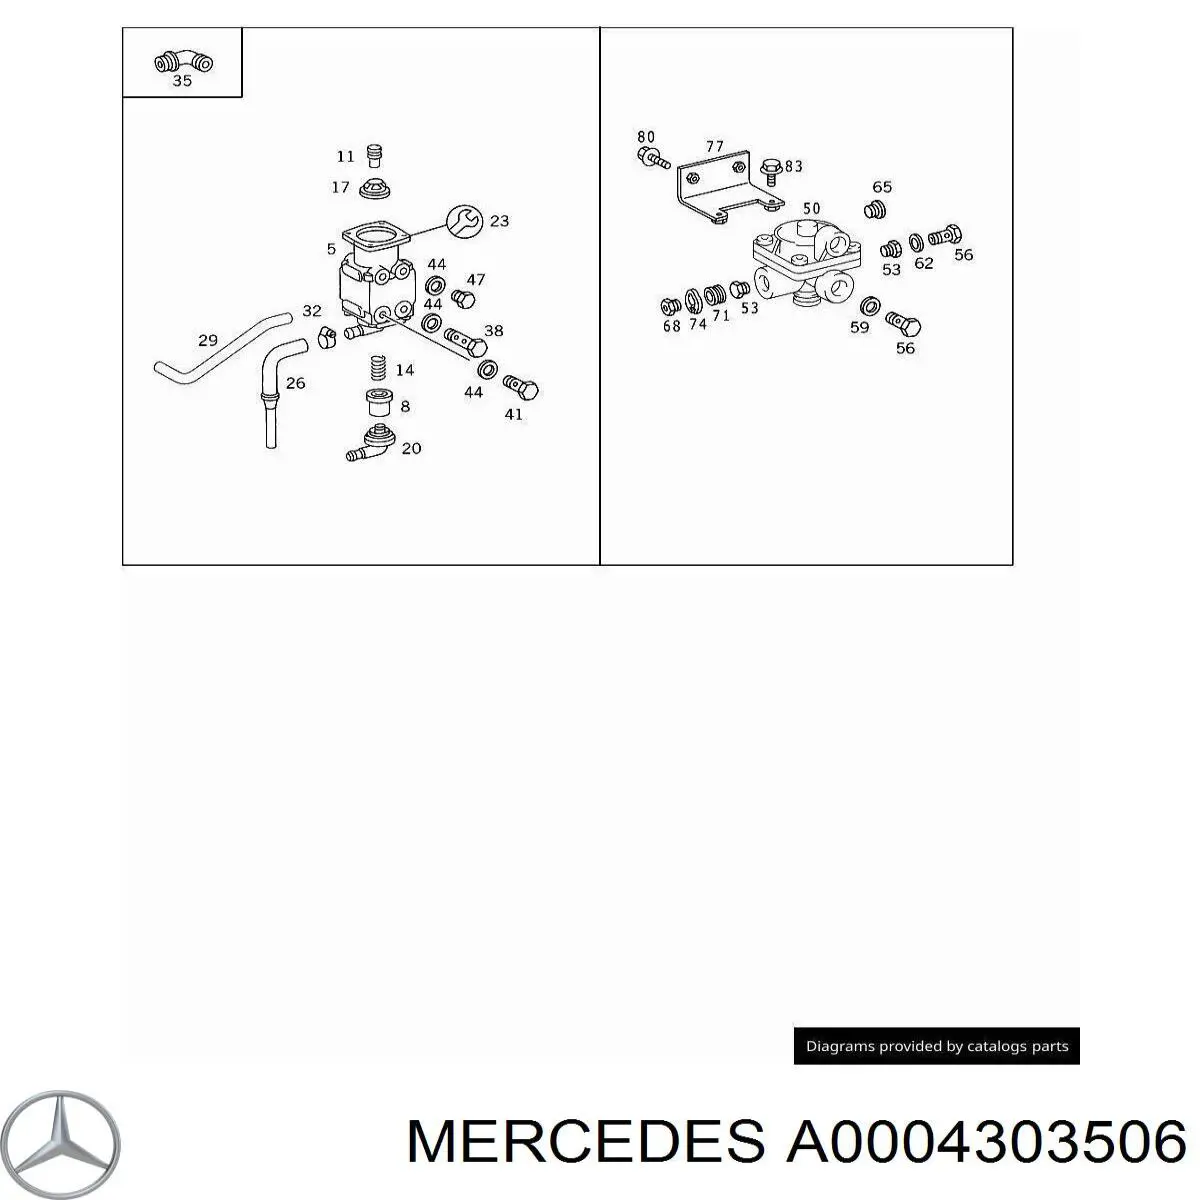 0004303506 Mercedes ремкомплект регулятора давления тормозов (регулятора тормозных сил)